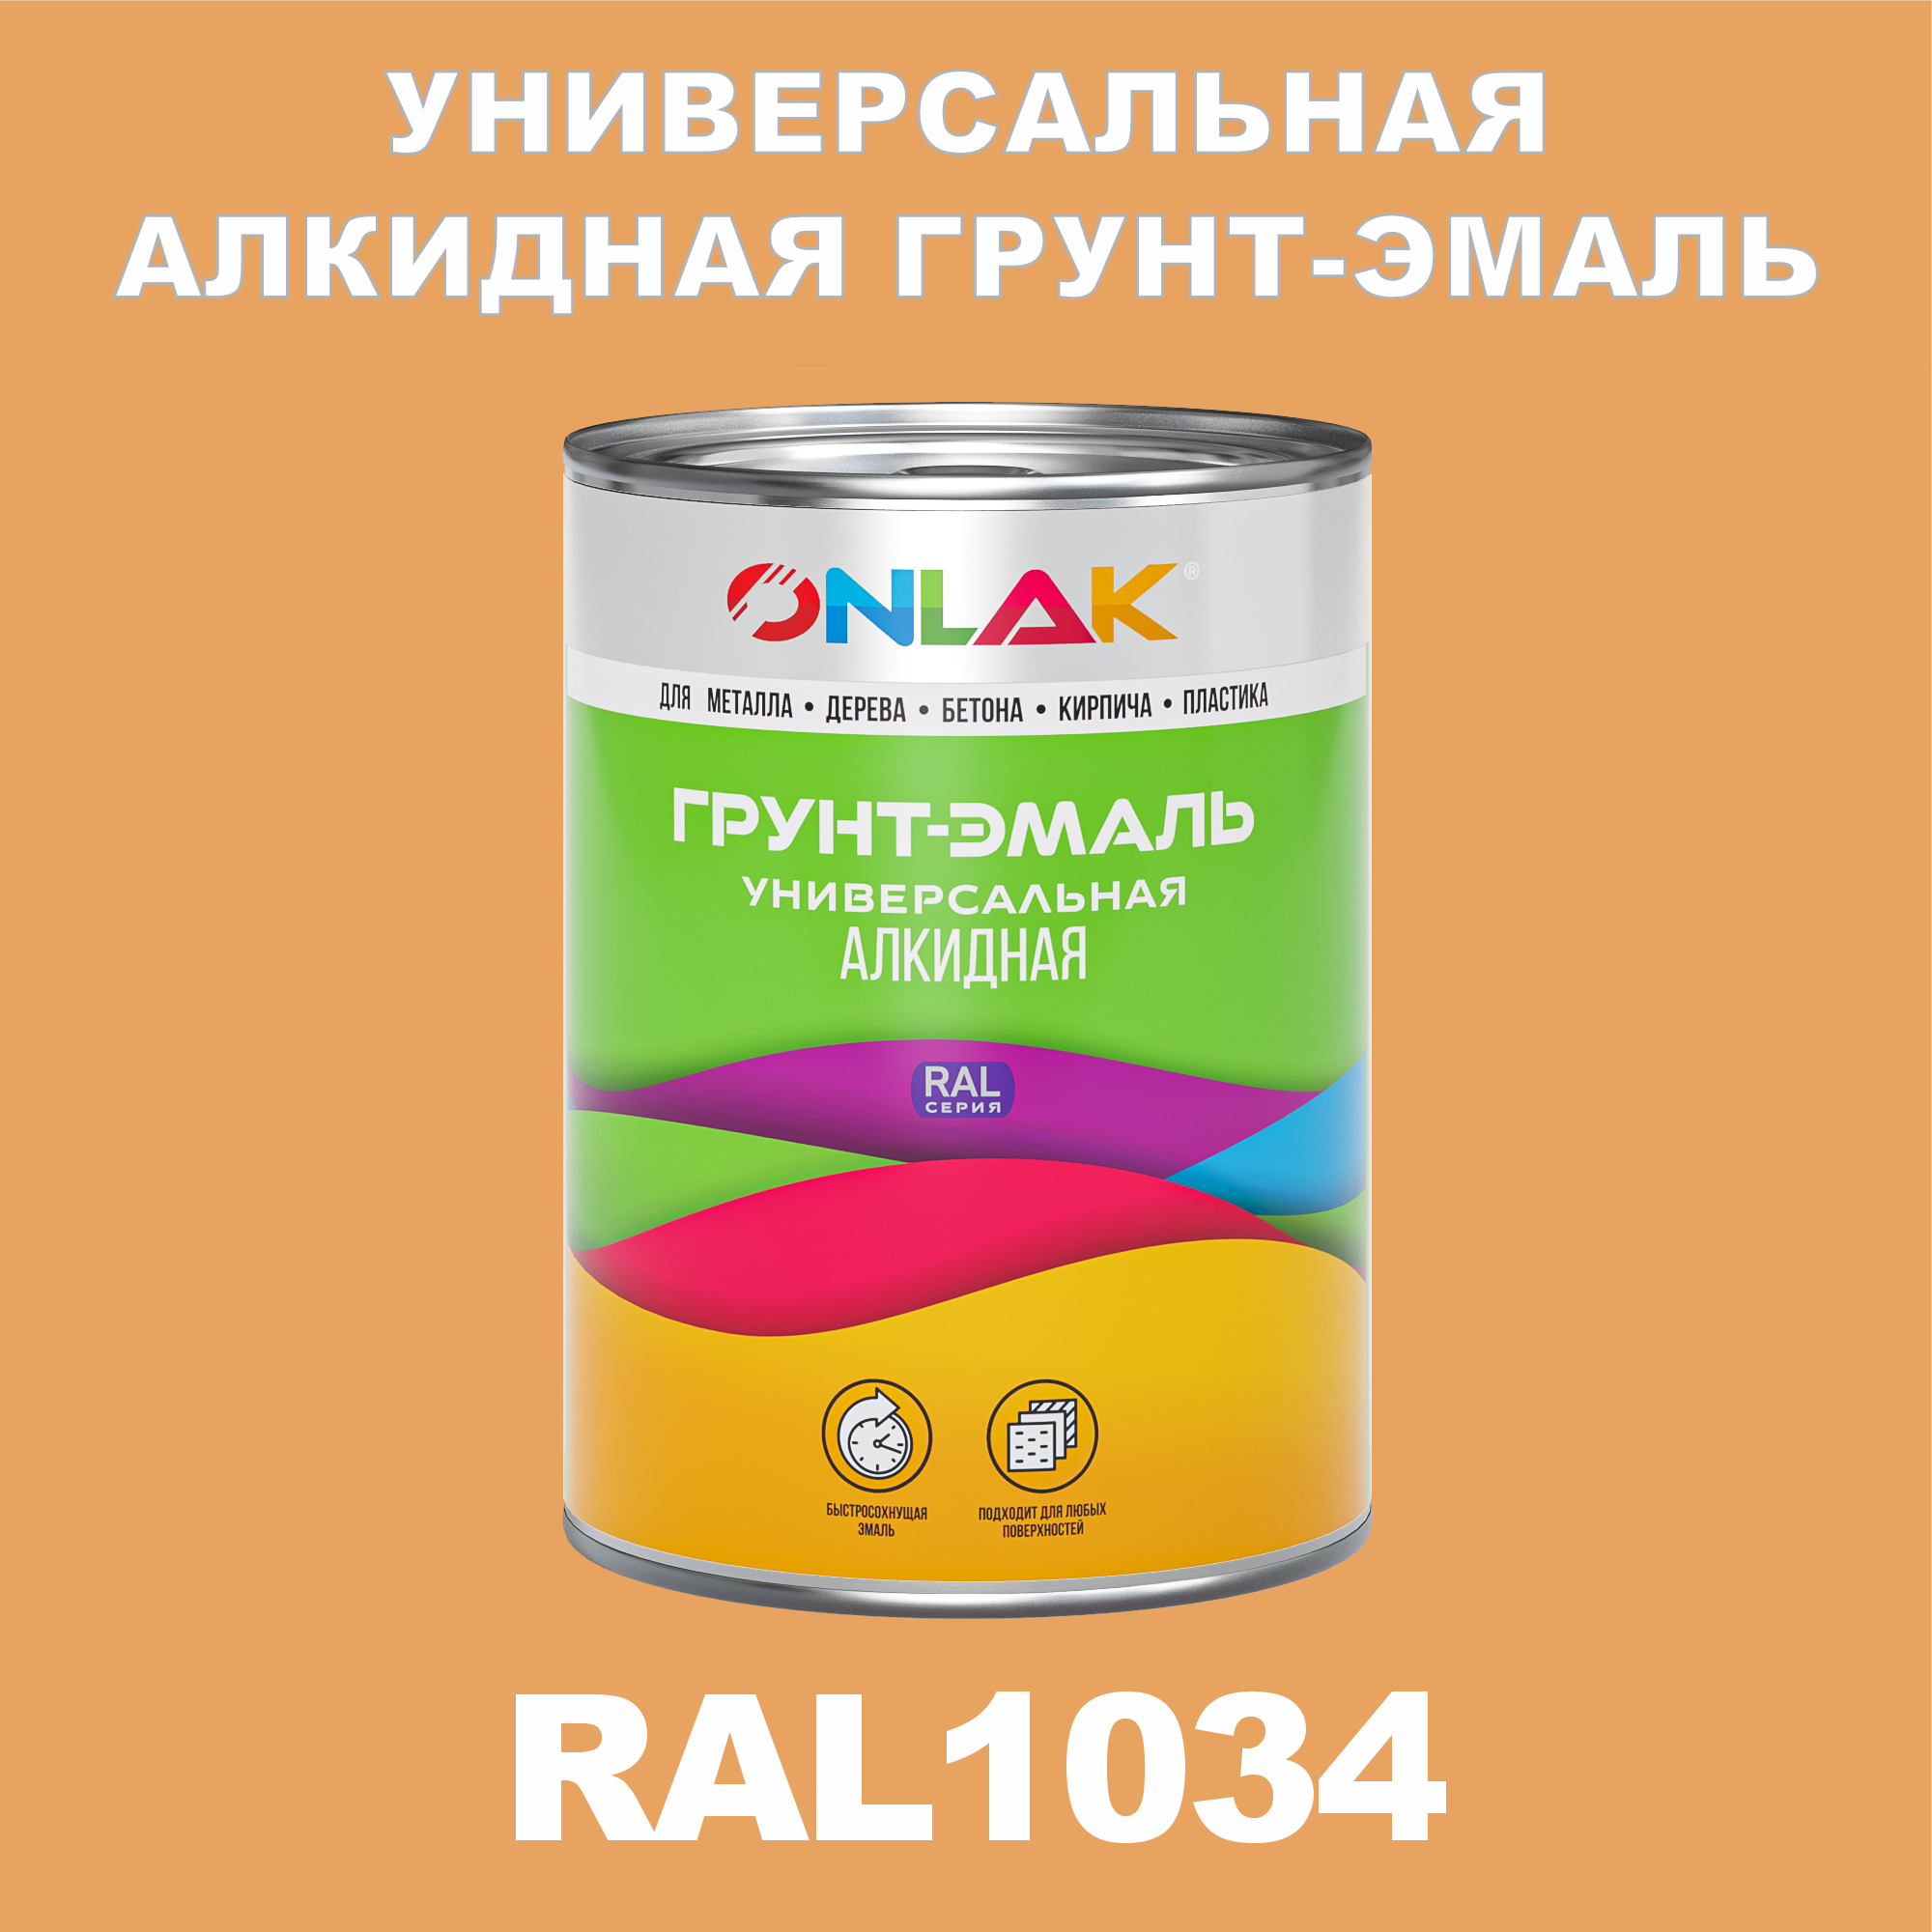 Грунт-эмаль ONLAK 1К RAL1034 антикоррозионная алкидная по металлу по ржавчине 1 кг грунт эмаль аэрозольная престиж 3в1 алкидная коричневая ral 8017 425 мл 0 425 кг